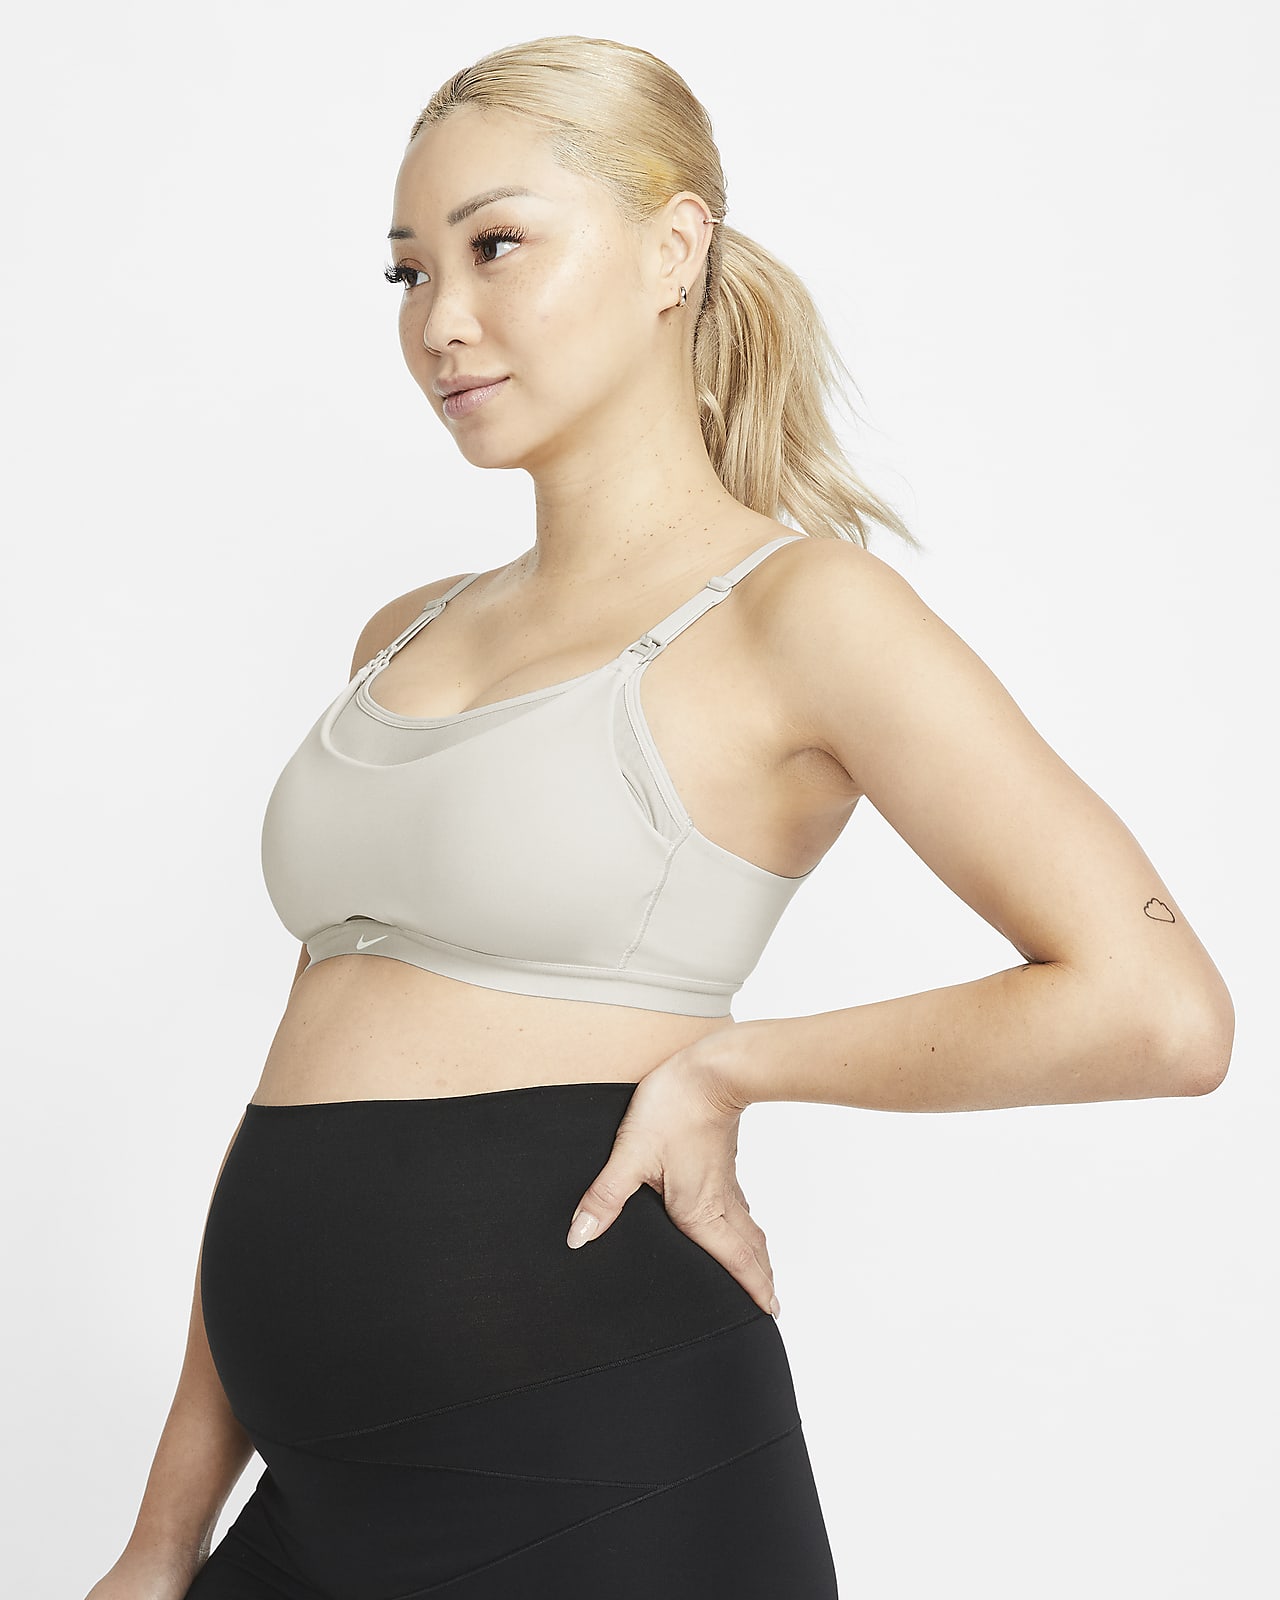 Nike Alate (M) 孕妈系列女子低强度支撑速干轻衬运动内衣